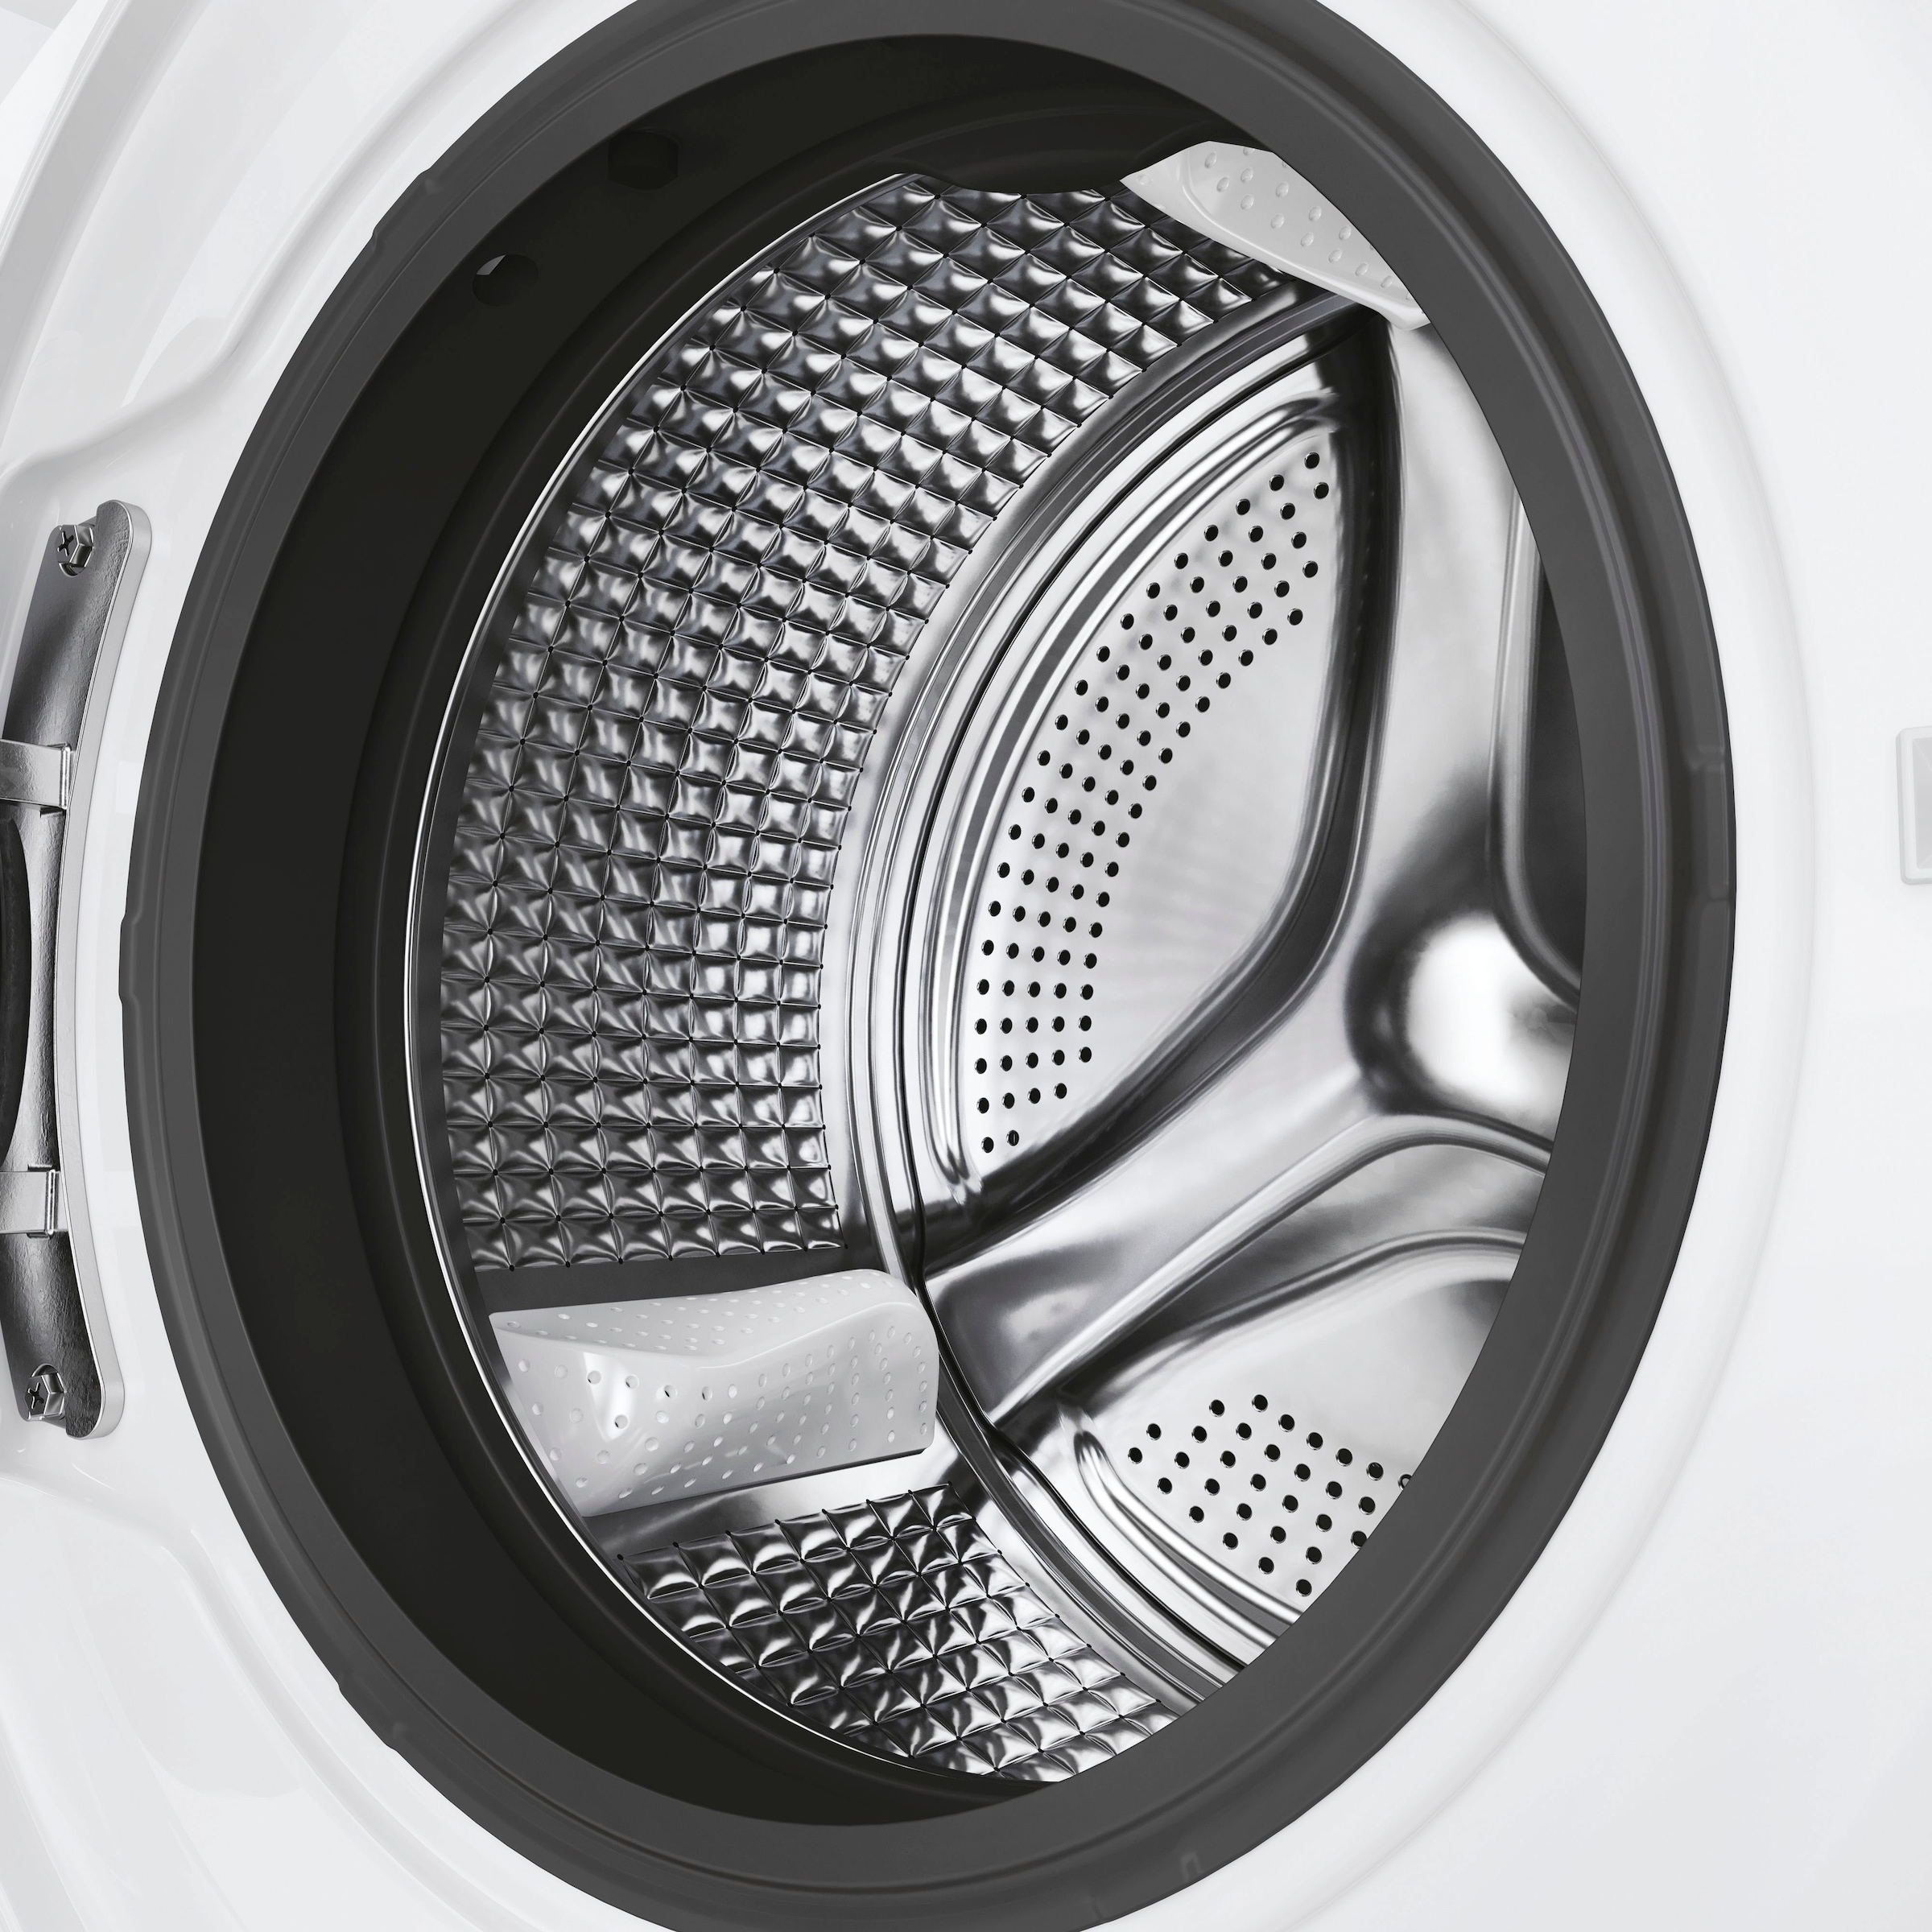 Haier Waschmaschine »HW70-B14929«, HW70-B14929, 7 kg, 1400 U/min, das Hygiene Plus: ABT® Antibakterielle Technologie